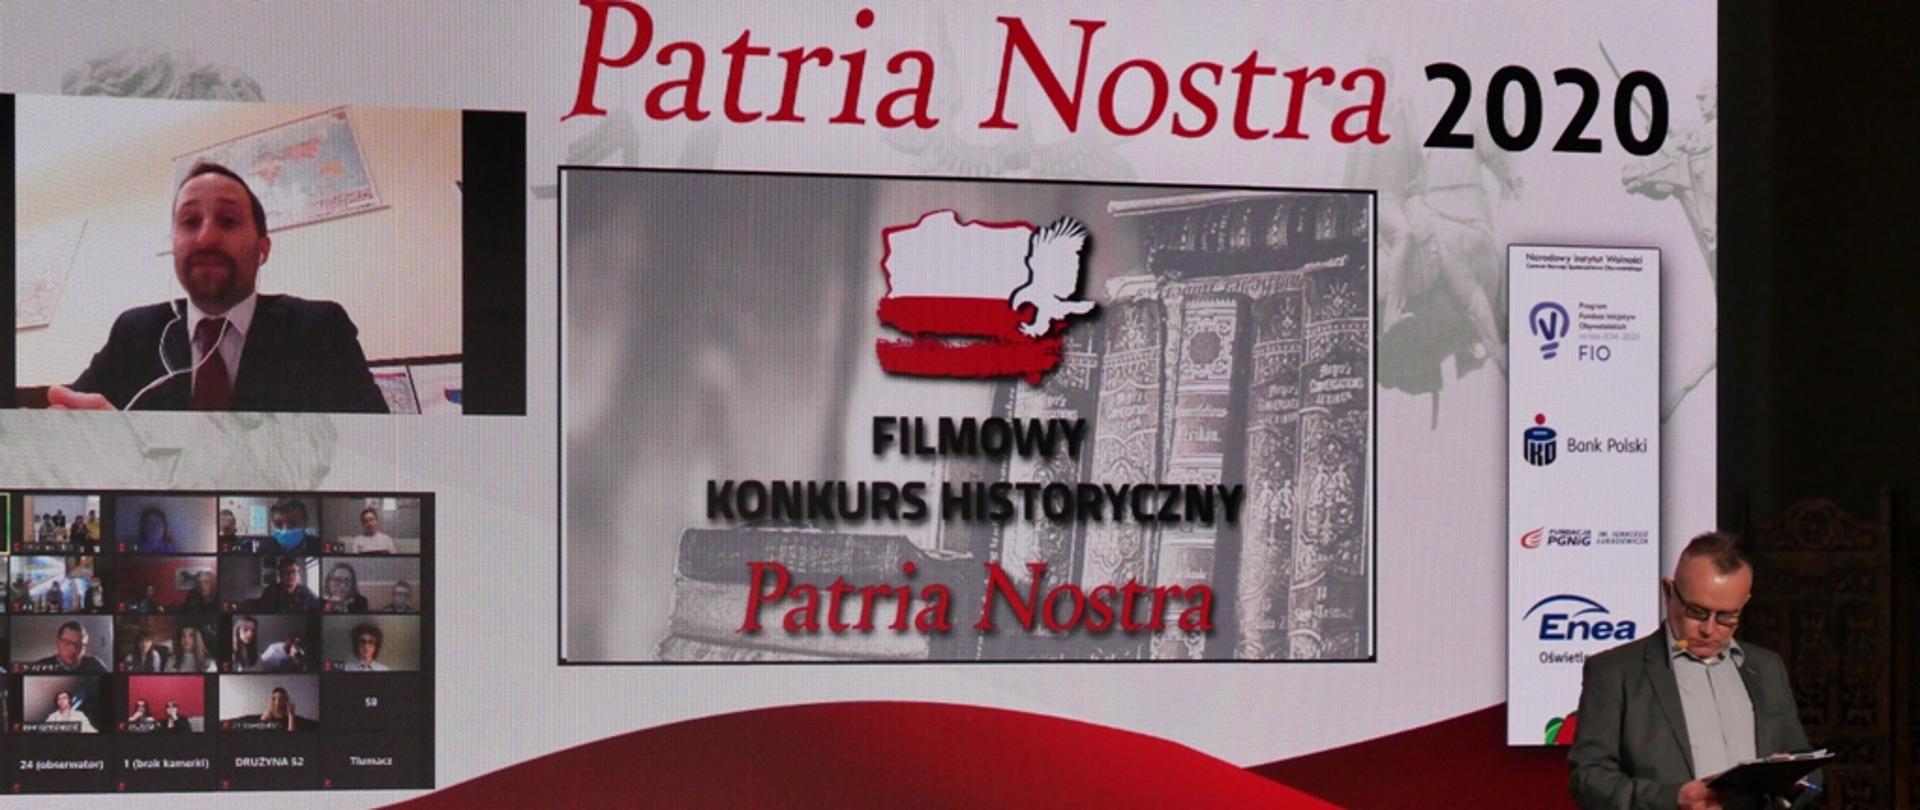 Gala Konkursu Historycznego Patria Nostra 2020